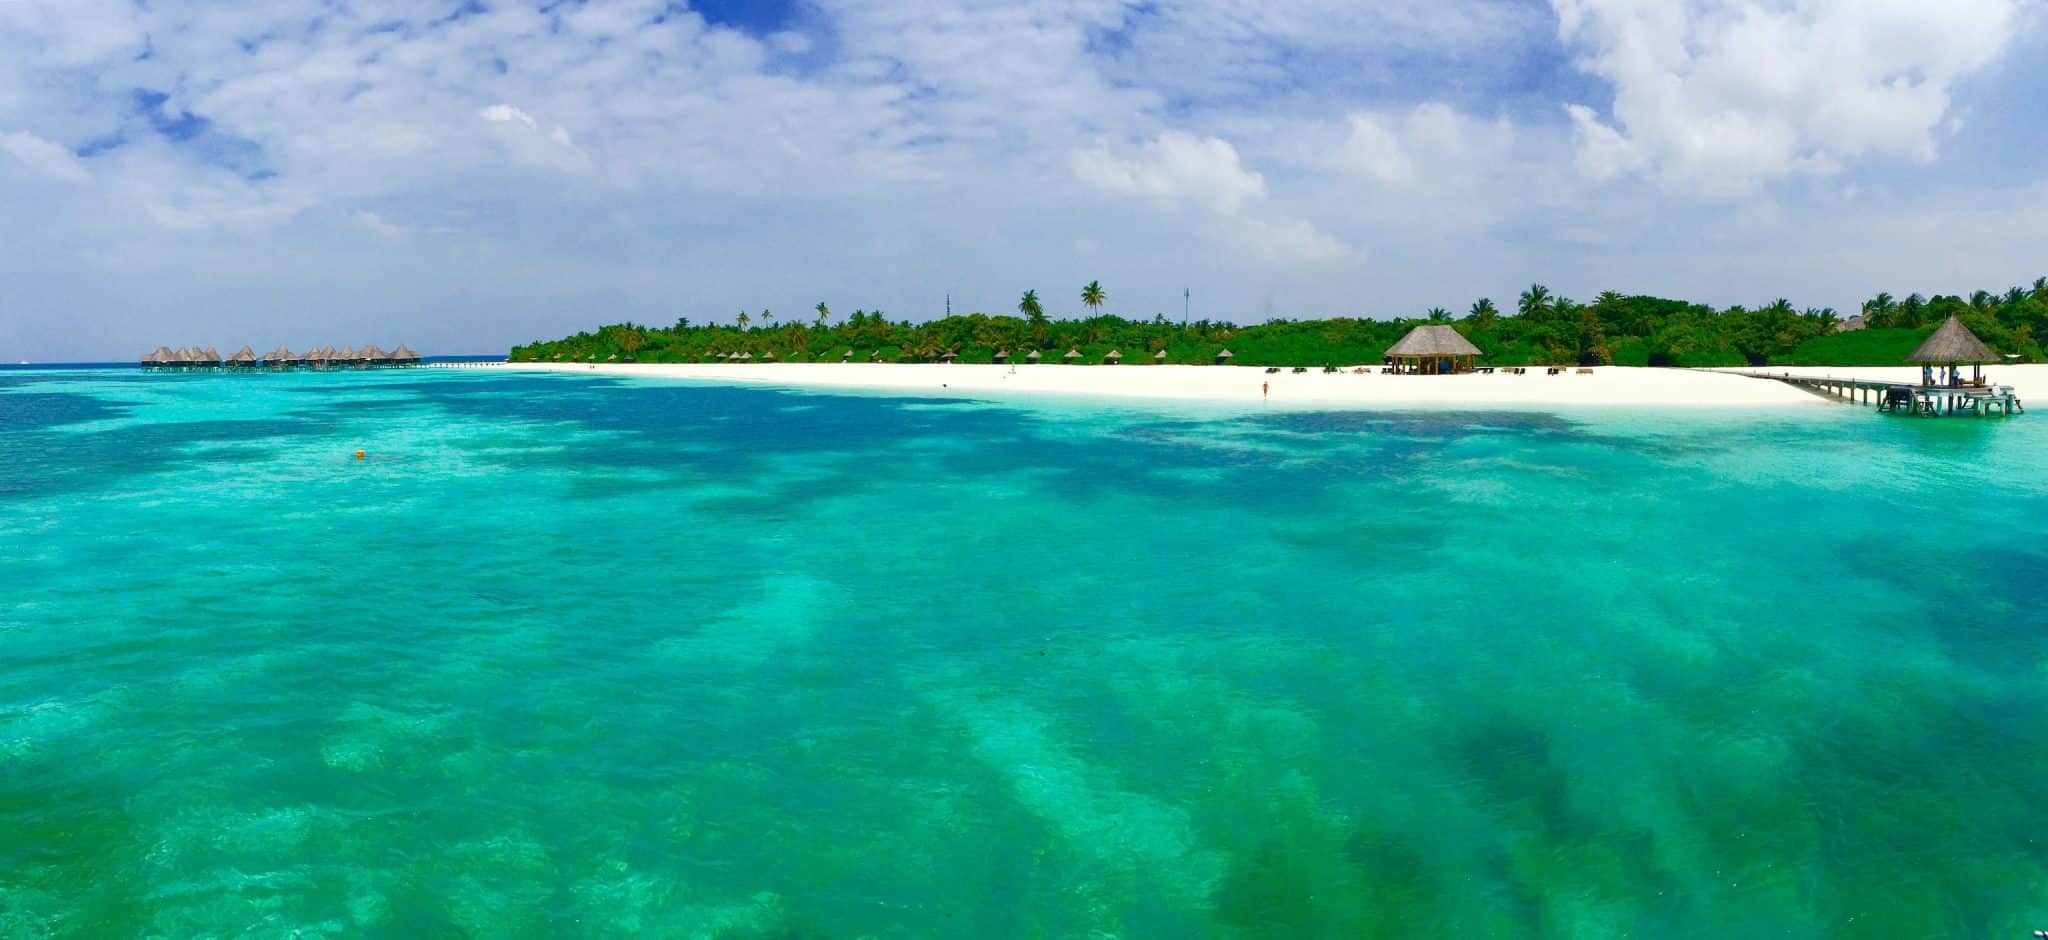 Isola dei resort alle Maldive: gli hotel e i resort della nazione insulare sono tra i più belli al mondo.